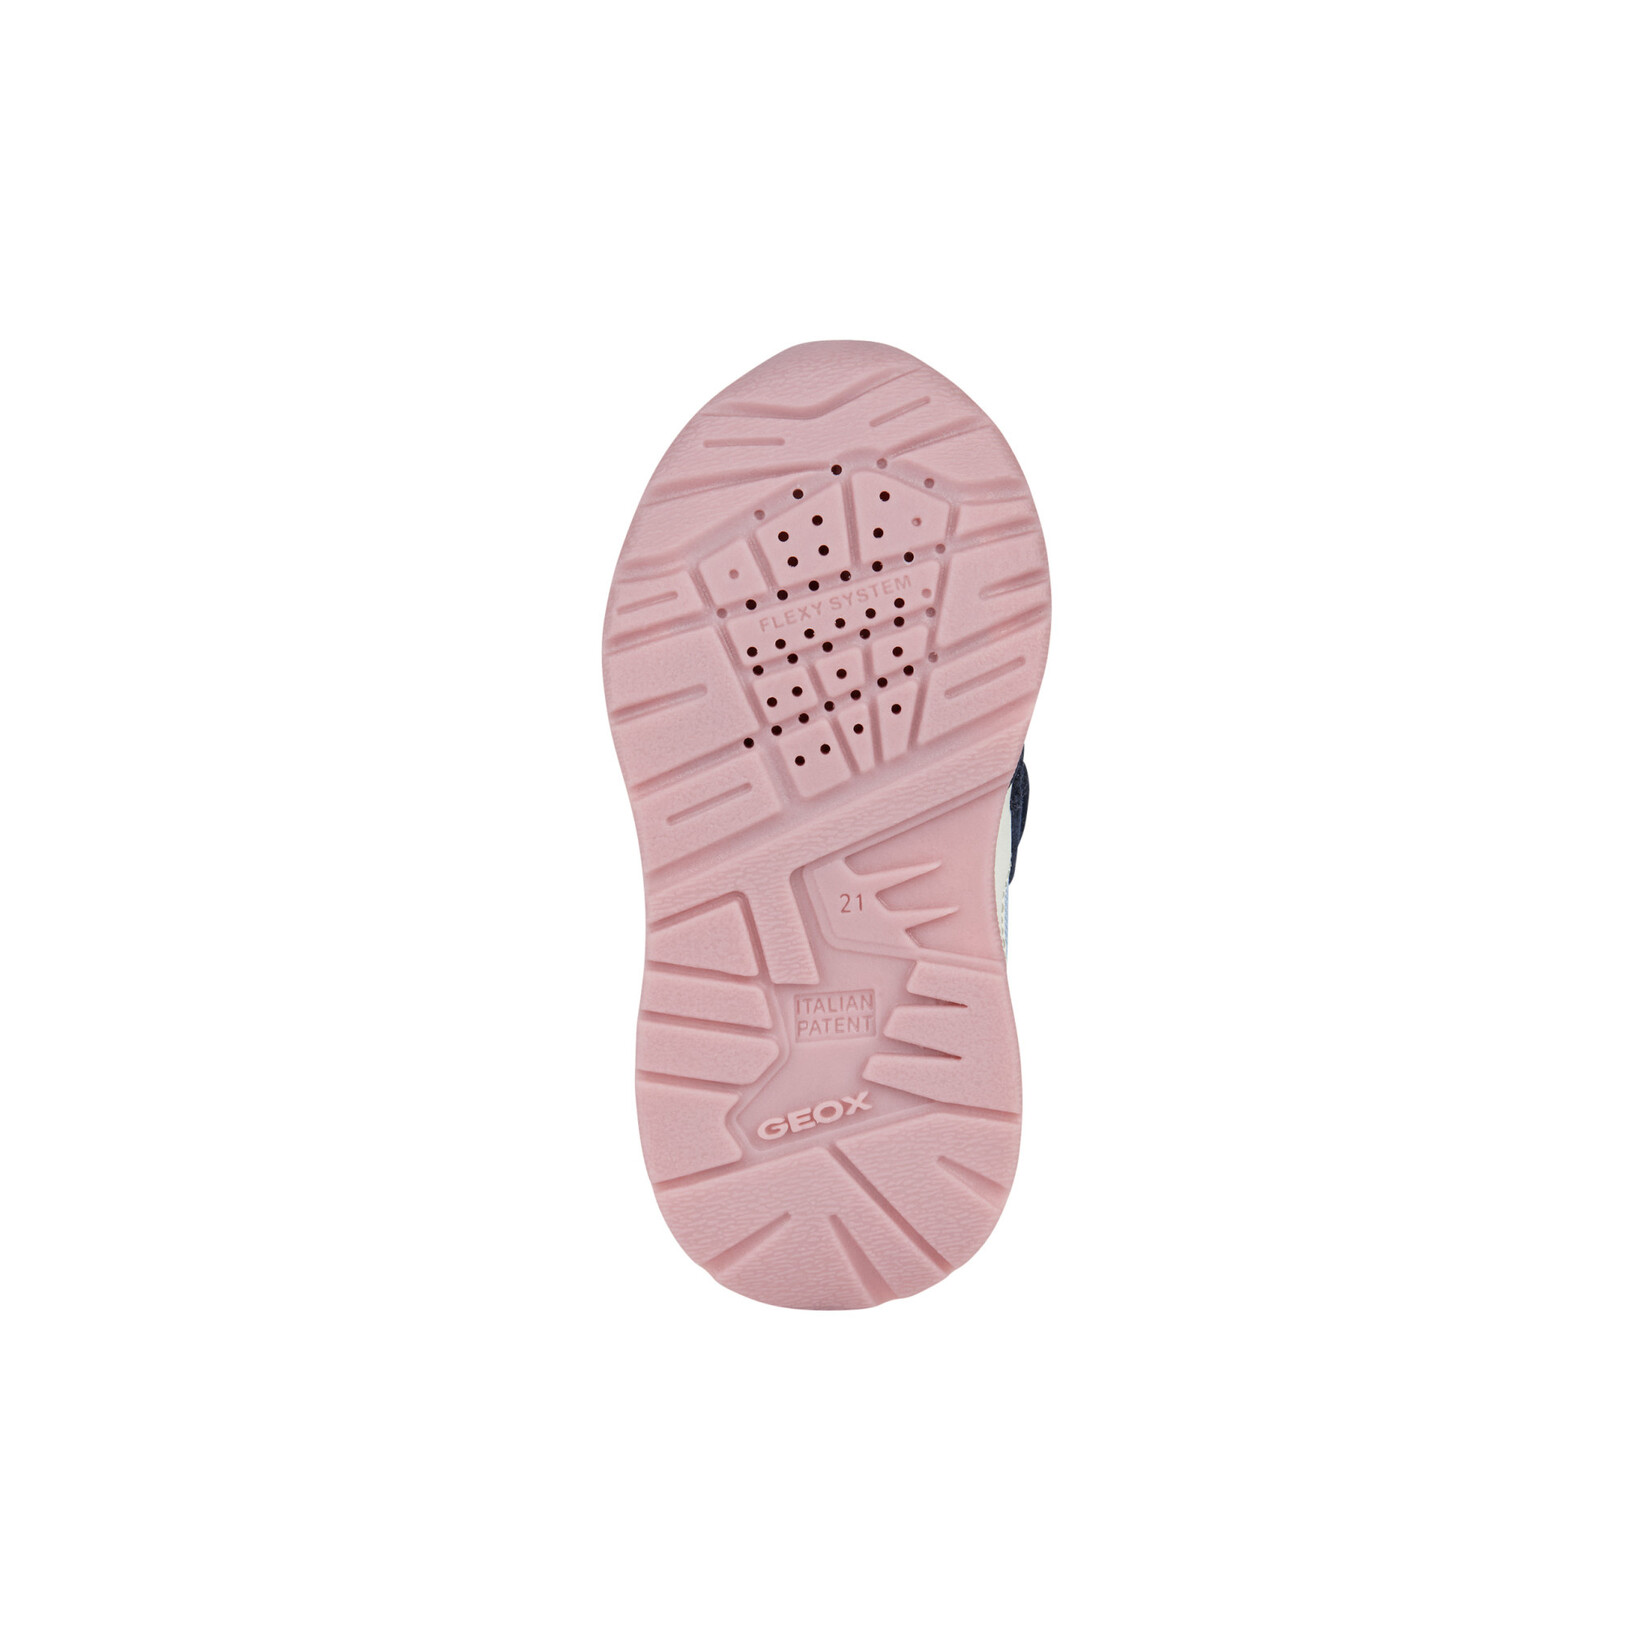 Geox GEOX - Chaussures de sport 'B. PYRIP - Suede+Cuir Synt.' - Marine foncé/Rose pâle